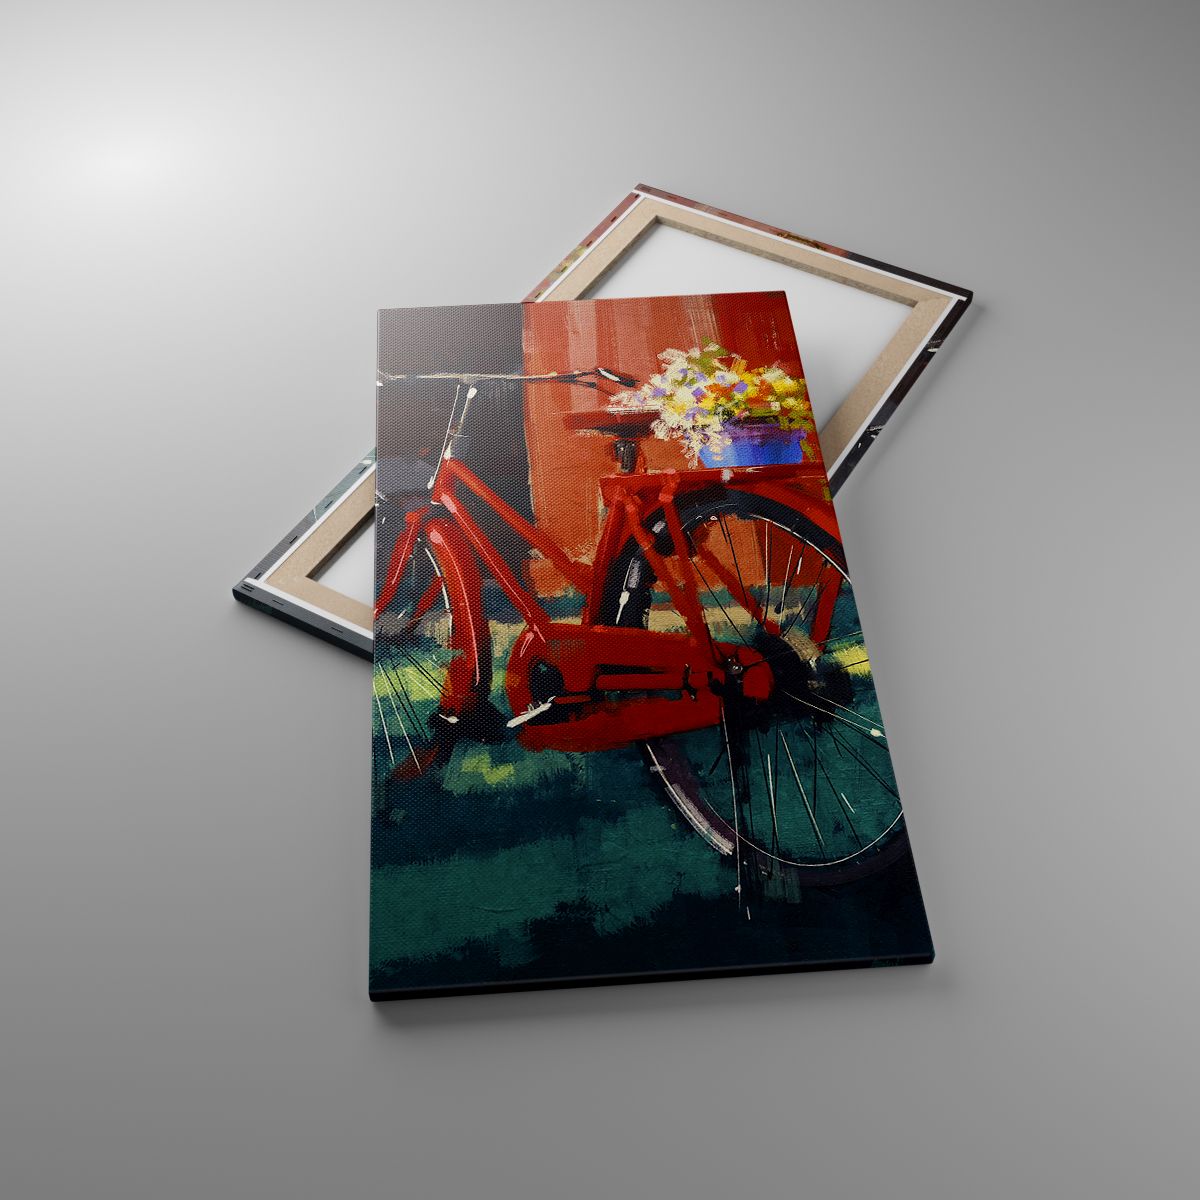 Obrazy Rower Vintage, Obrazy Kwiaty W Doniczce, Obrazy Podróż, Obrazy Sztuka, Obrazy Malarstwo